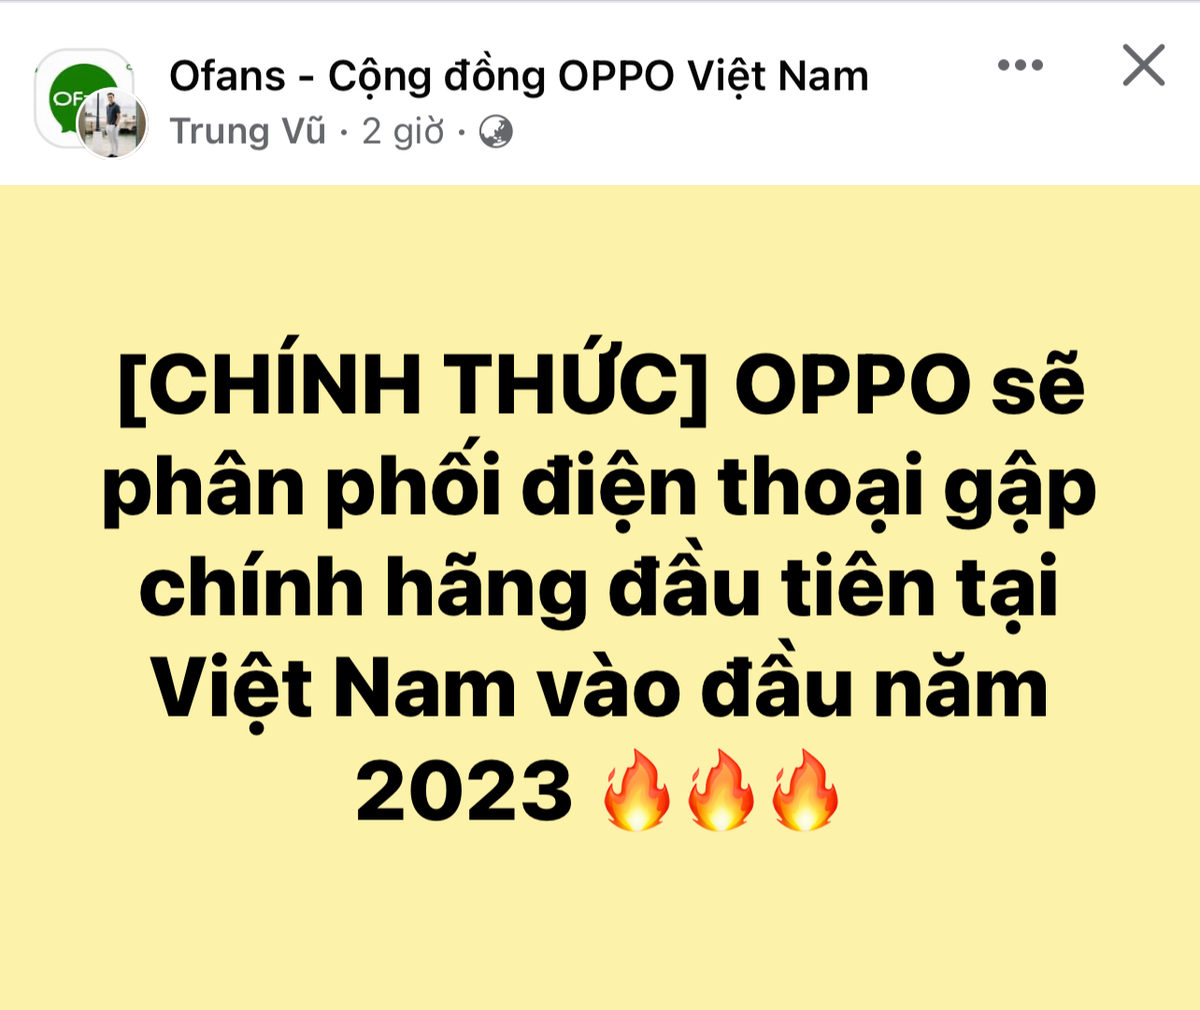 OPPO sẽ phân phối chính hãng điện thoại gập tại Việt Nam vào đầu năm 2023